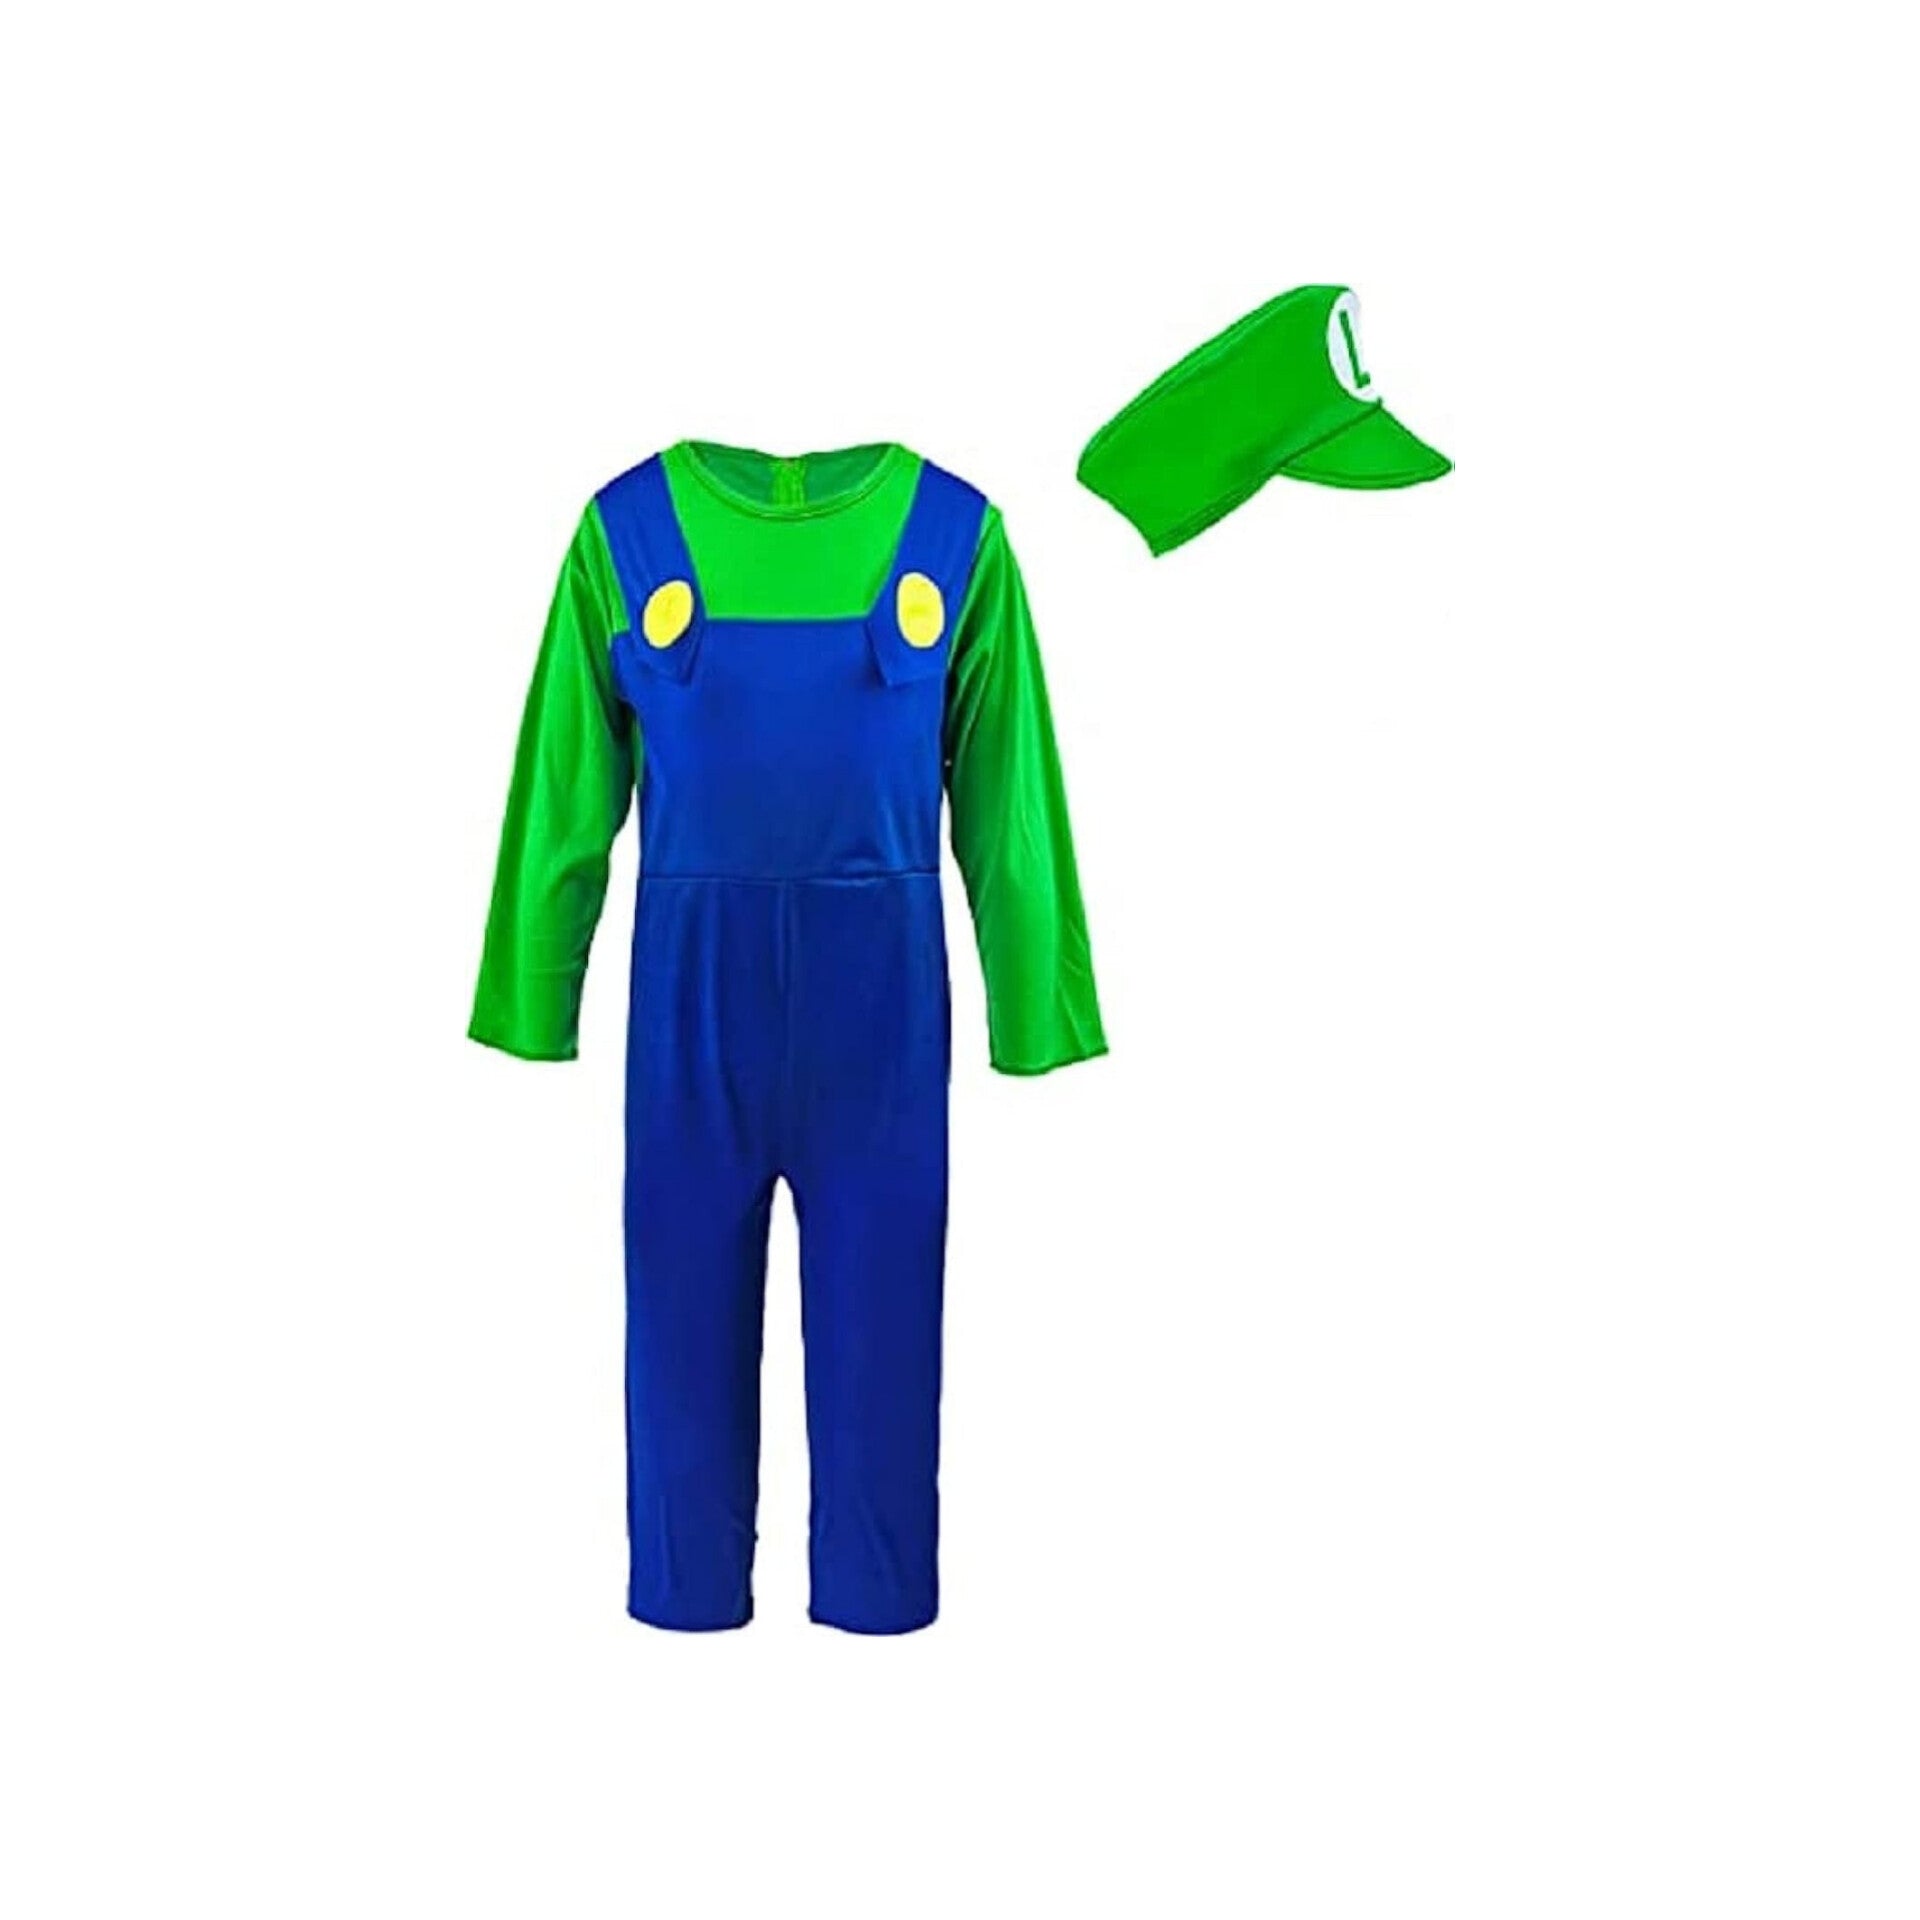 Vondiwa-Traje de Luigi para niño, talla L (5-7 años)